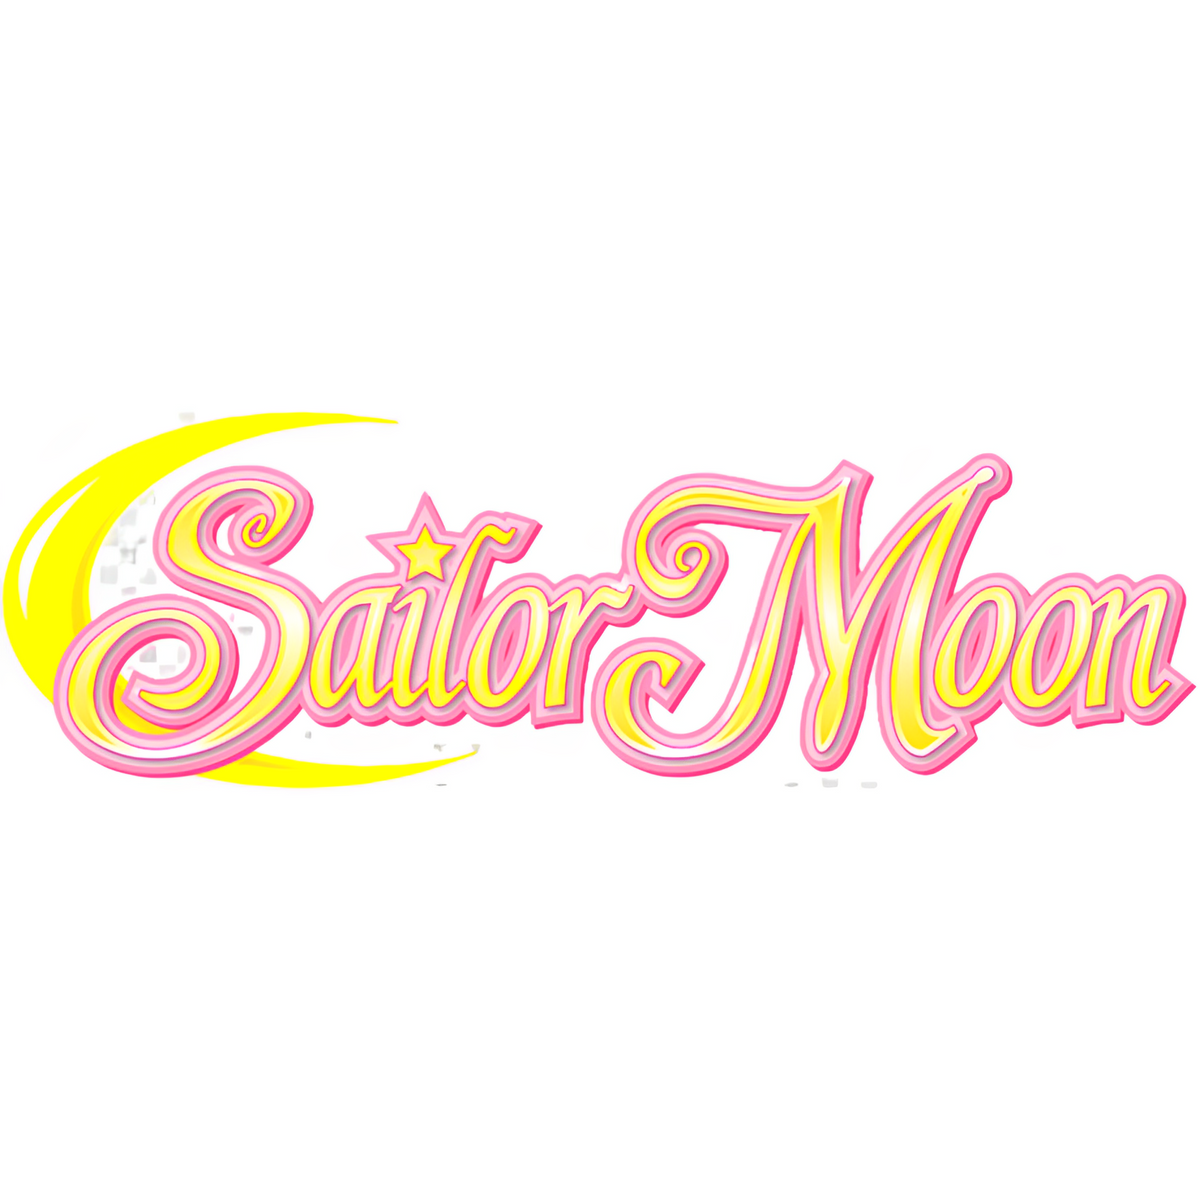 sailor moon logo transparent